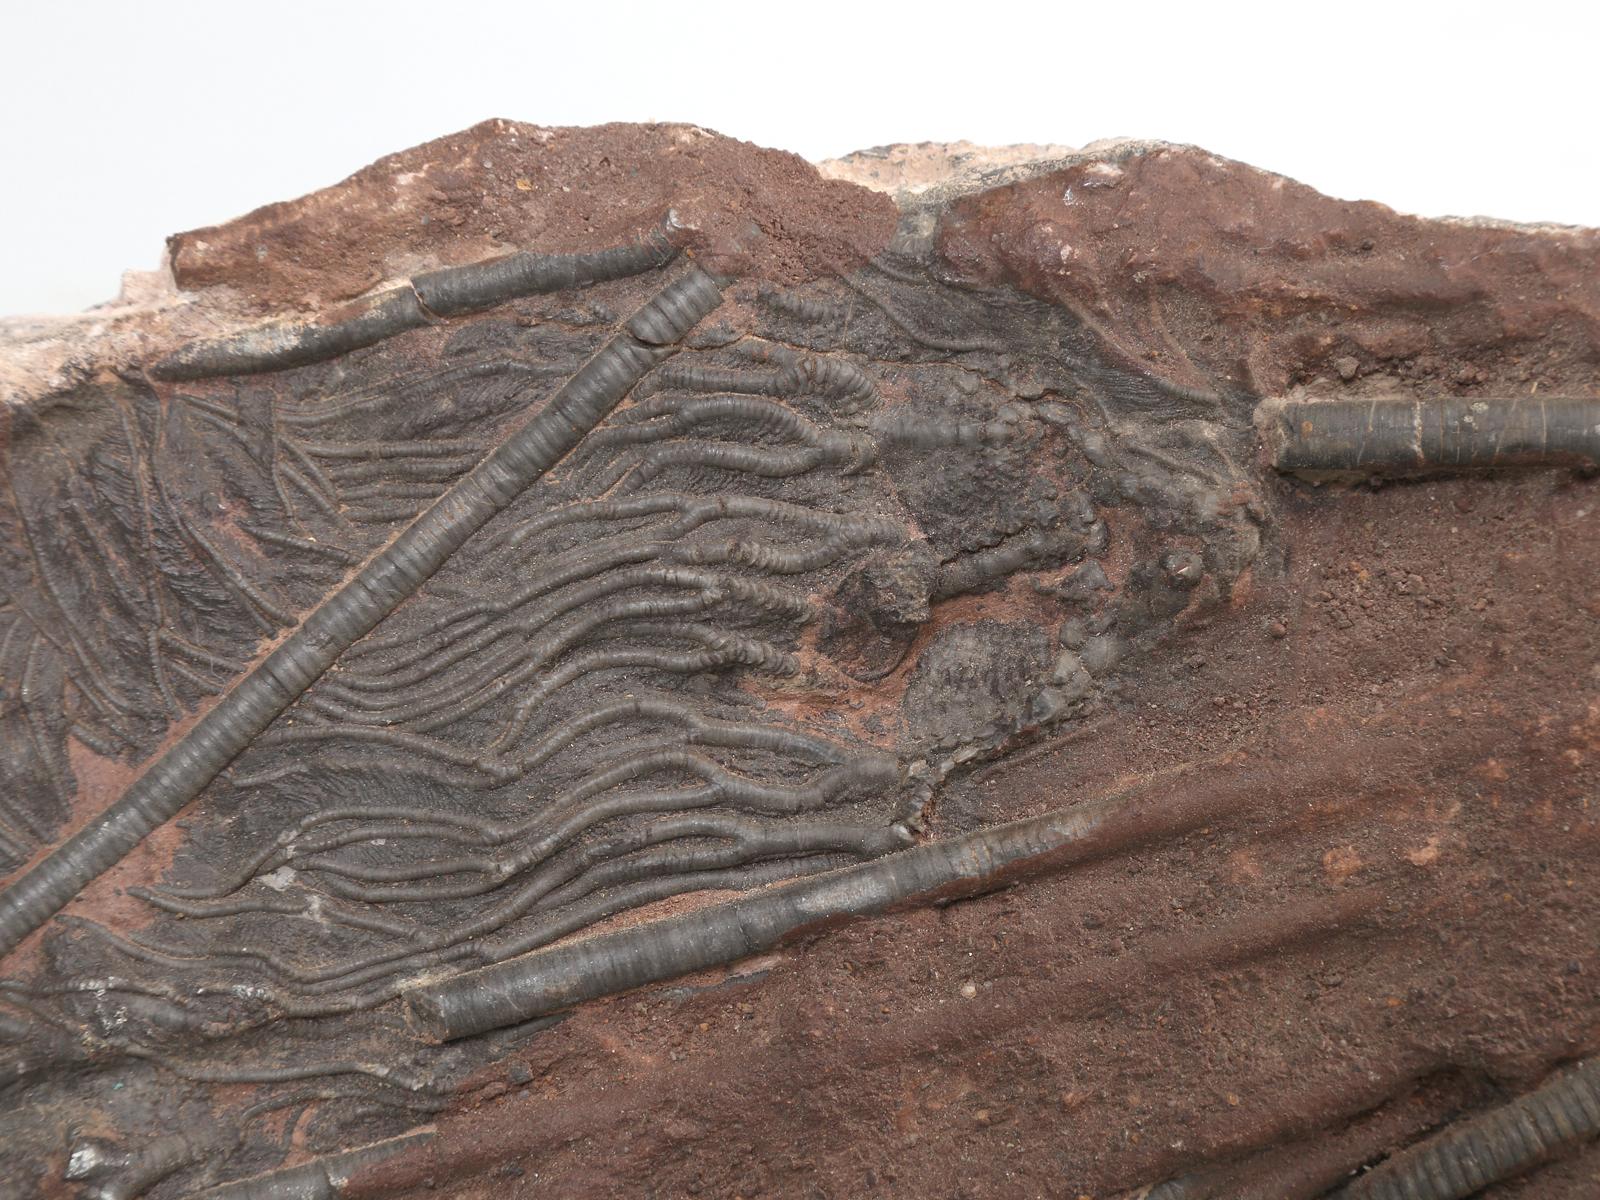 Marokkanisches Crinoid-Fossil, etwa 450 Millionen Jahre alt (18. Jahrhundert und früher)